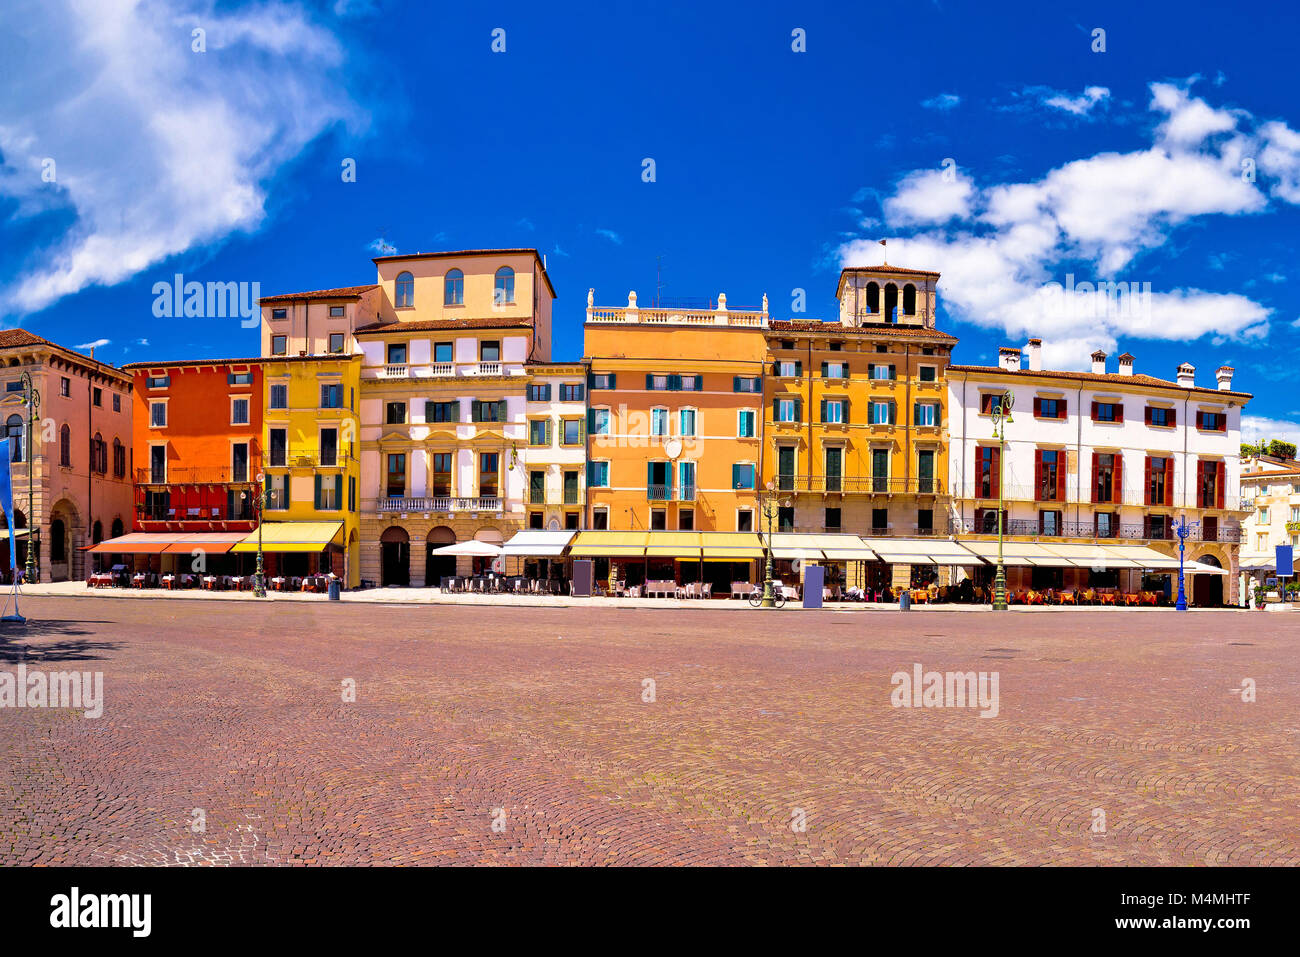 Die Piazza Bra in Verona bunte Aussicht, Sehenswürdigkeiten in der Region Venetien, Italien Stockfoto